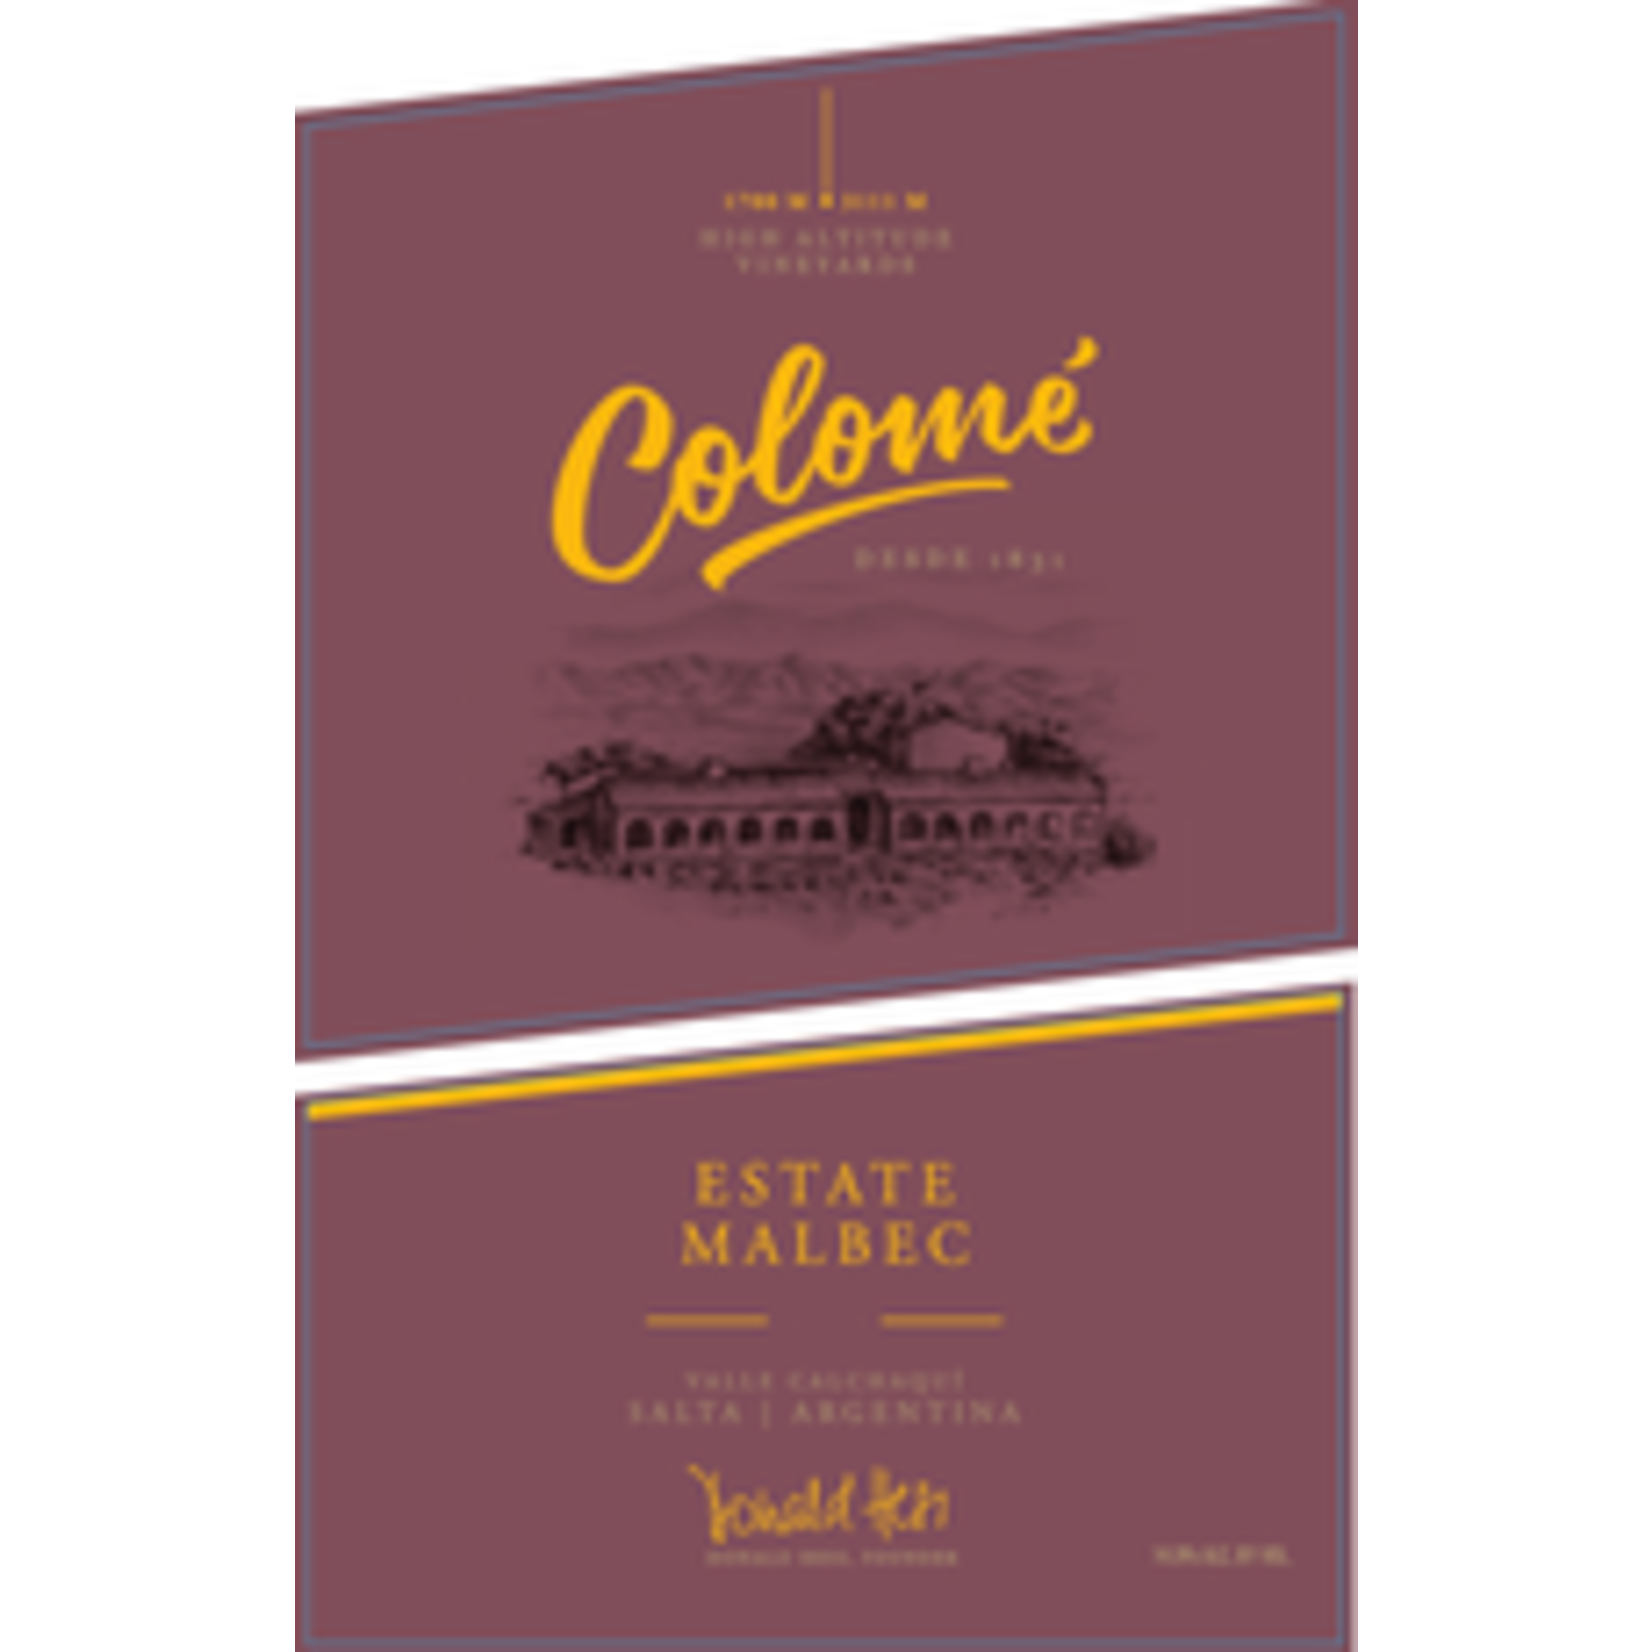 Wine Colome Estate Malbec 2019